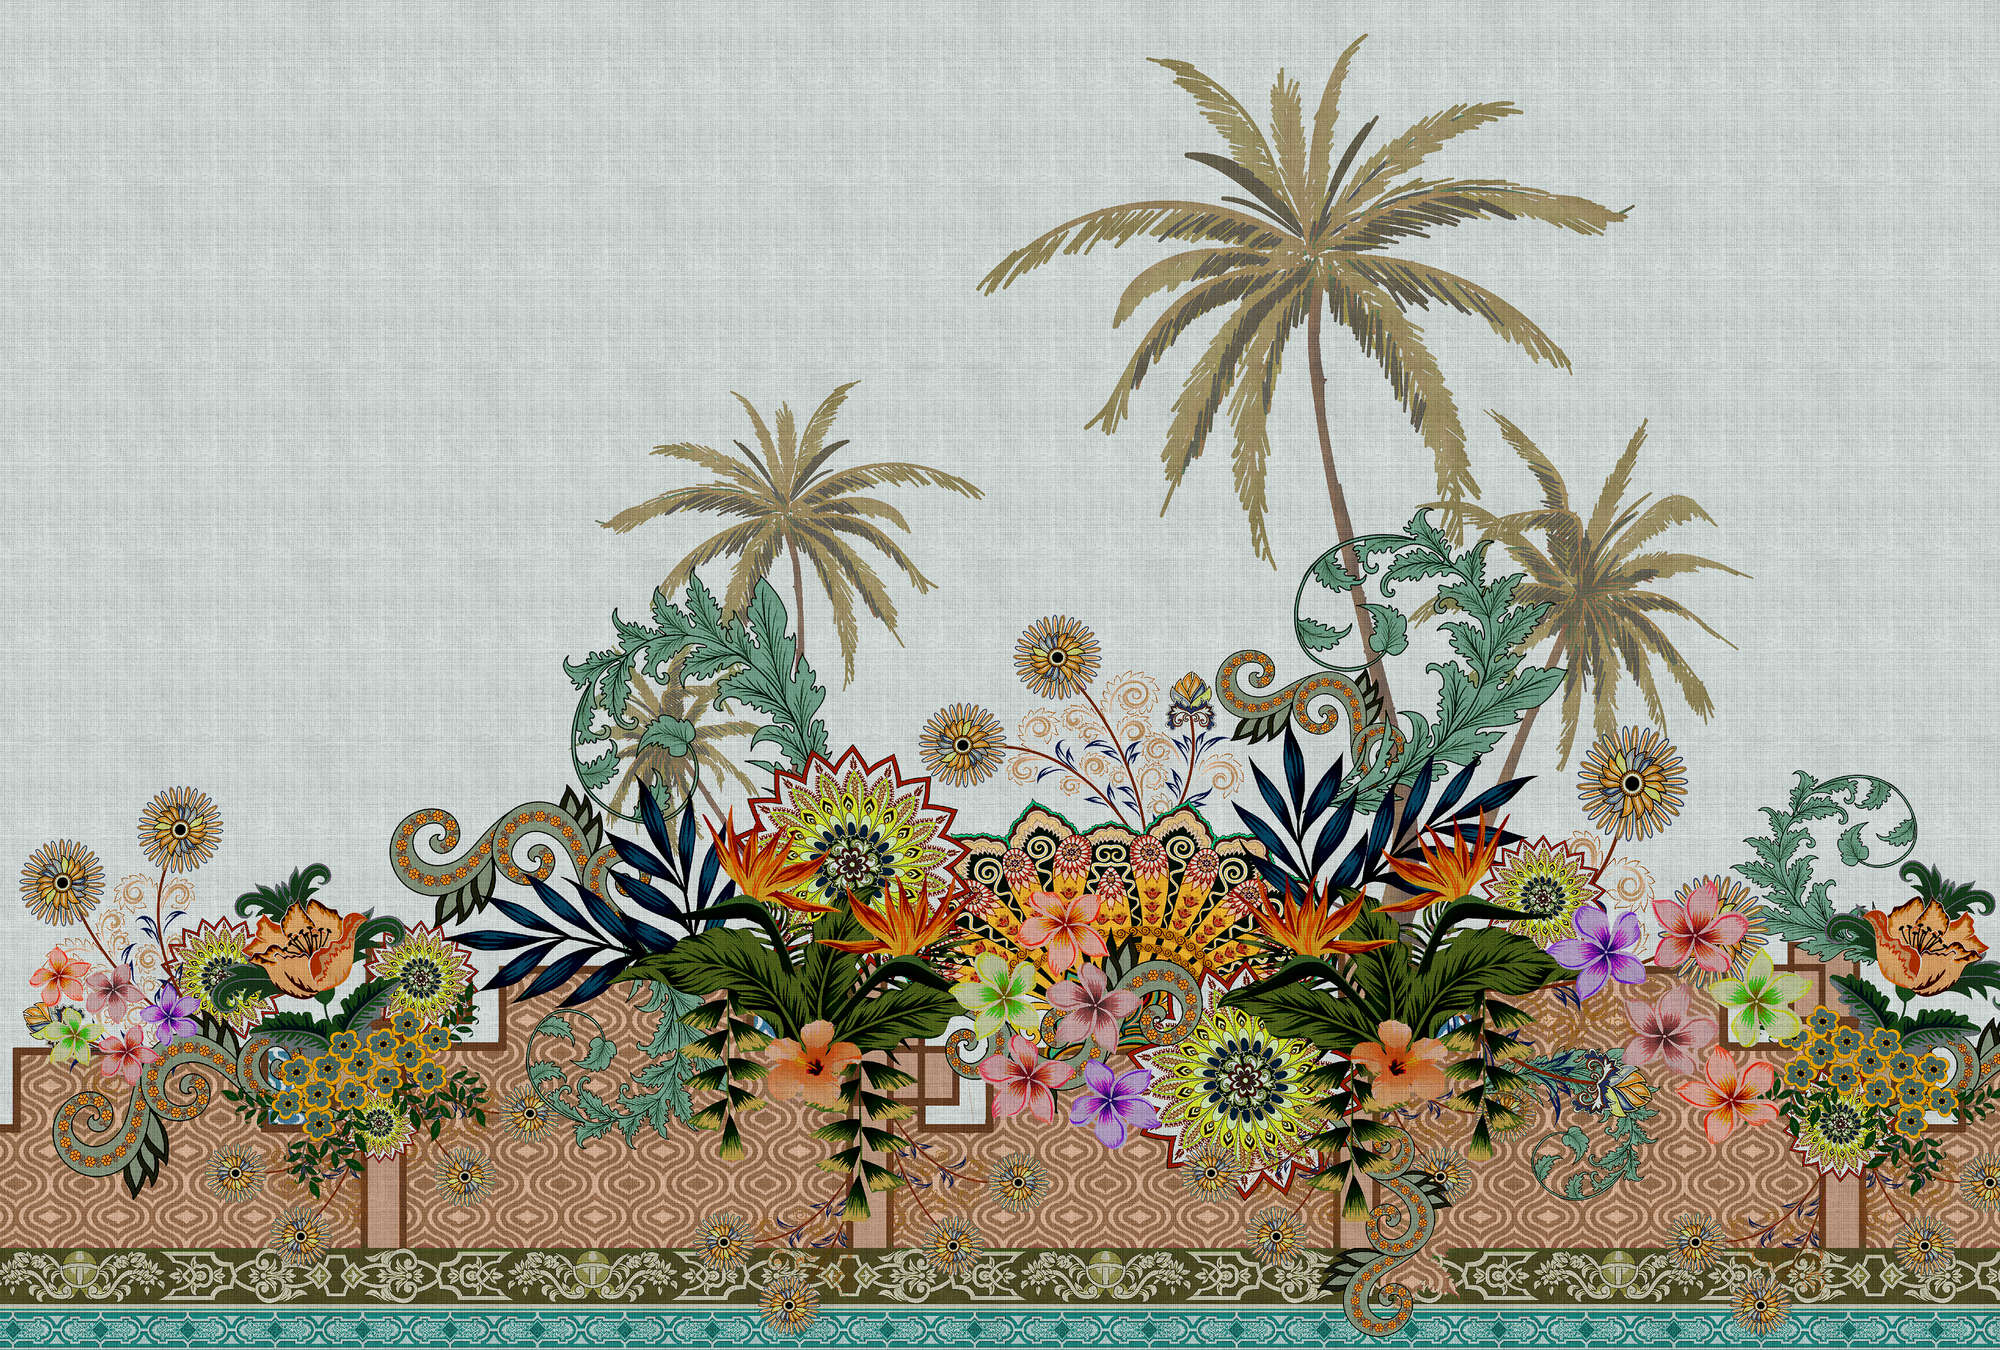             Jardín Oriental 3 - Mural de pared Jardín de Flores Estilo India
        